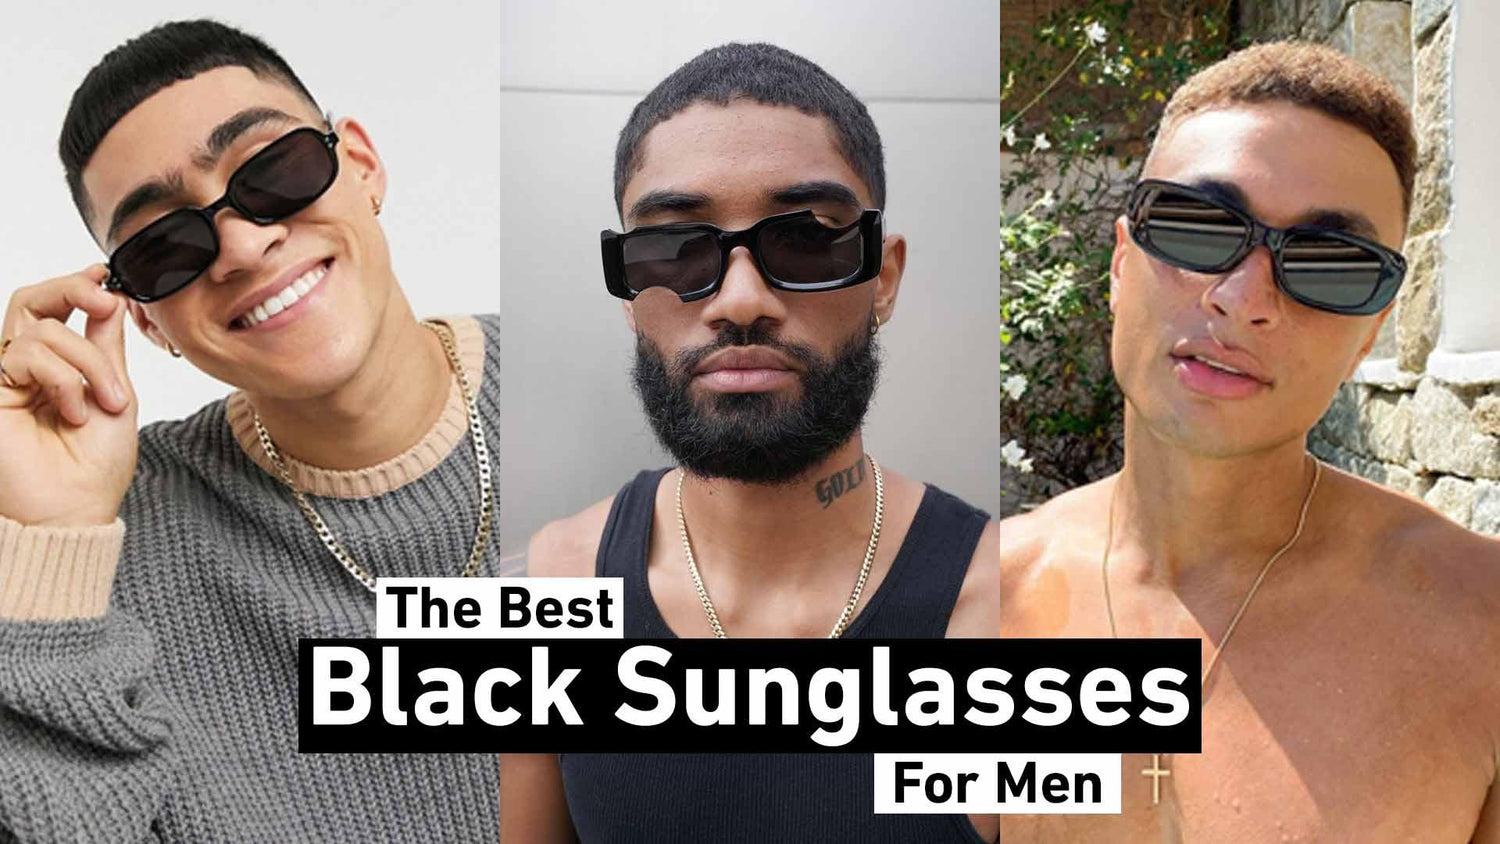 The Best Black Sunglasses for Men